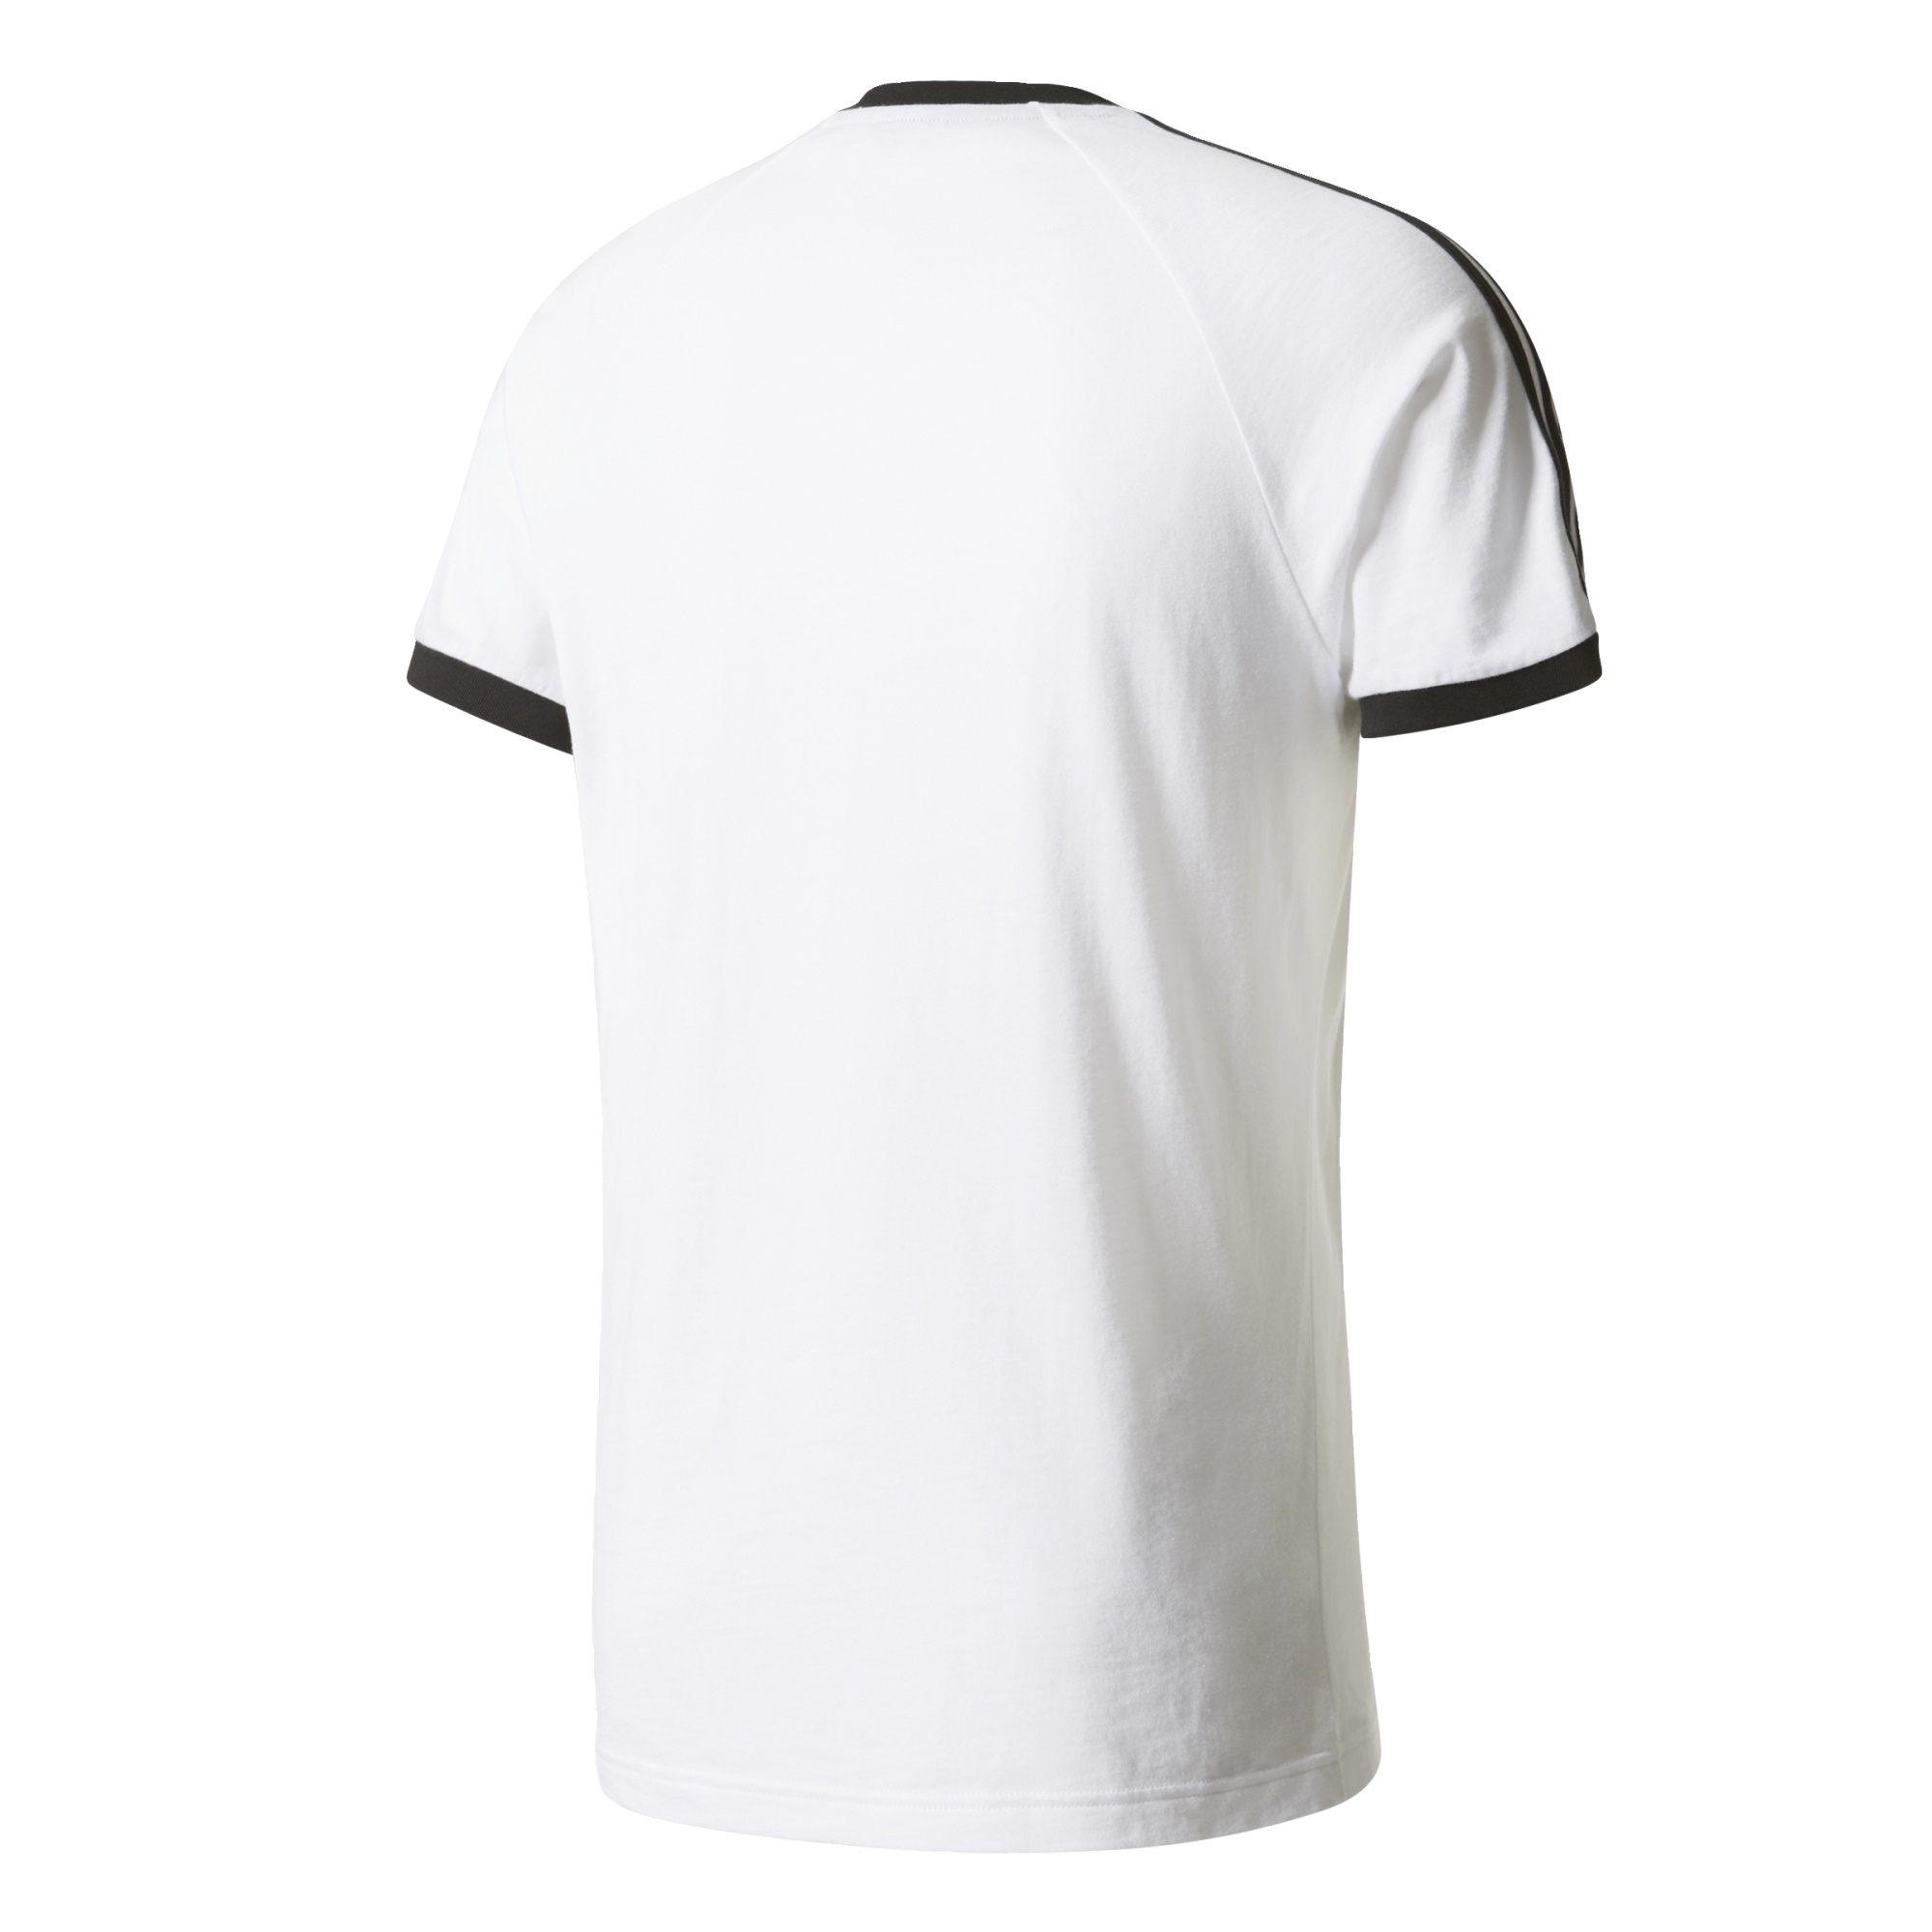 Permanecer de pié Notorio Cambiable Adidas Originals Camiseta CLFN Logo (blanco/negro)